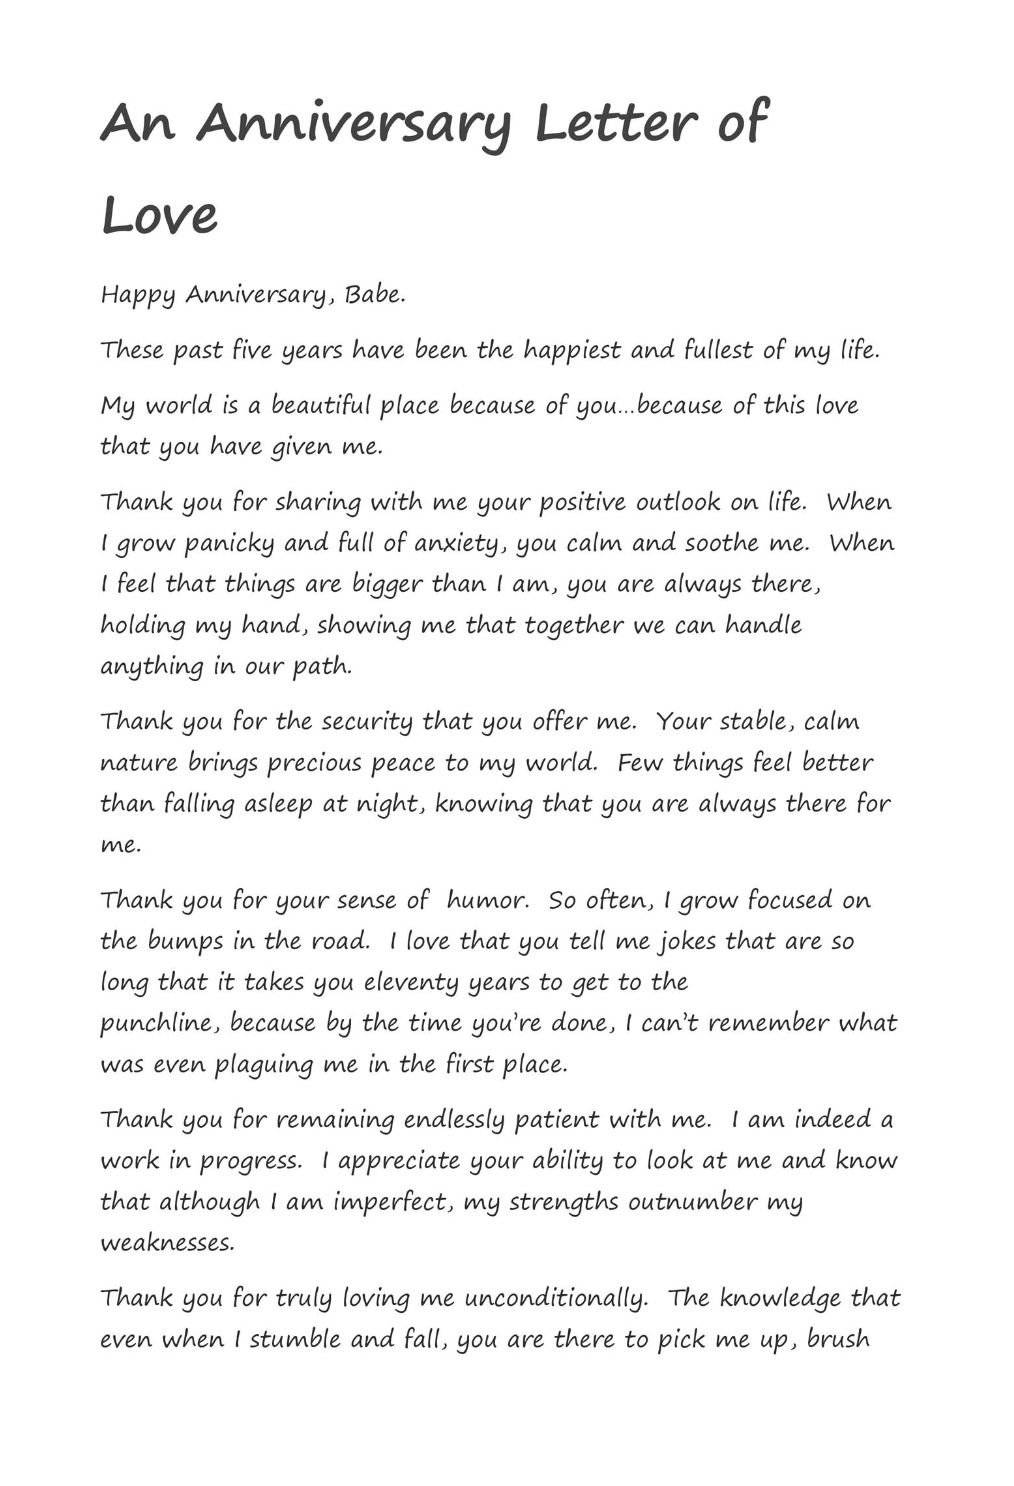 sample anniversary letter of love